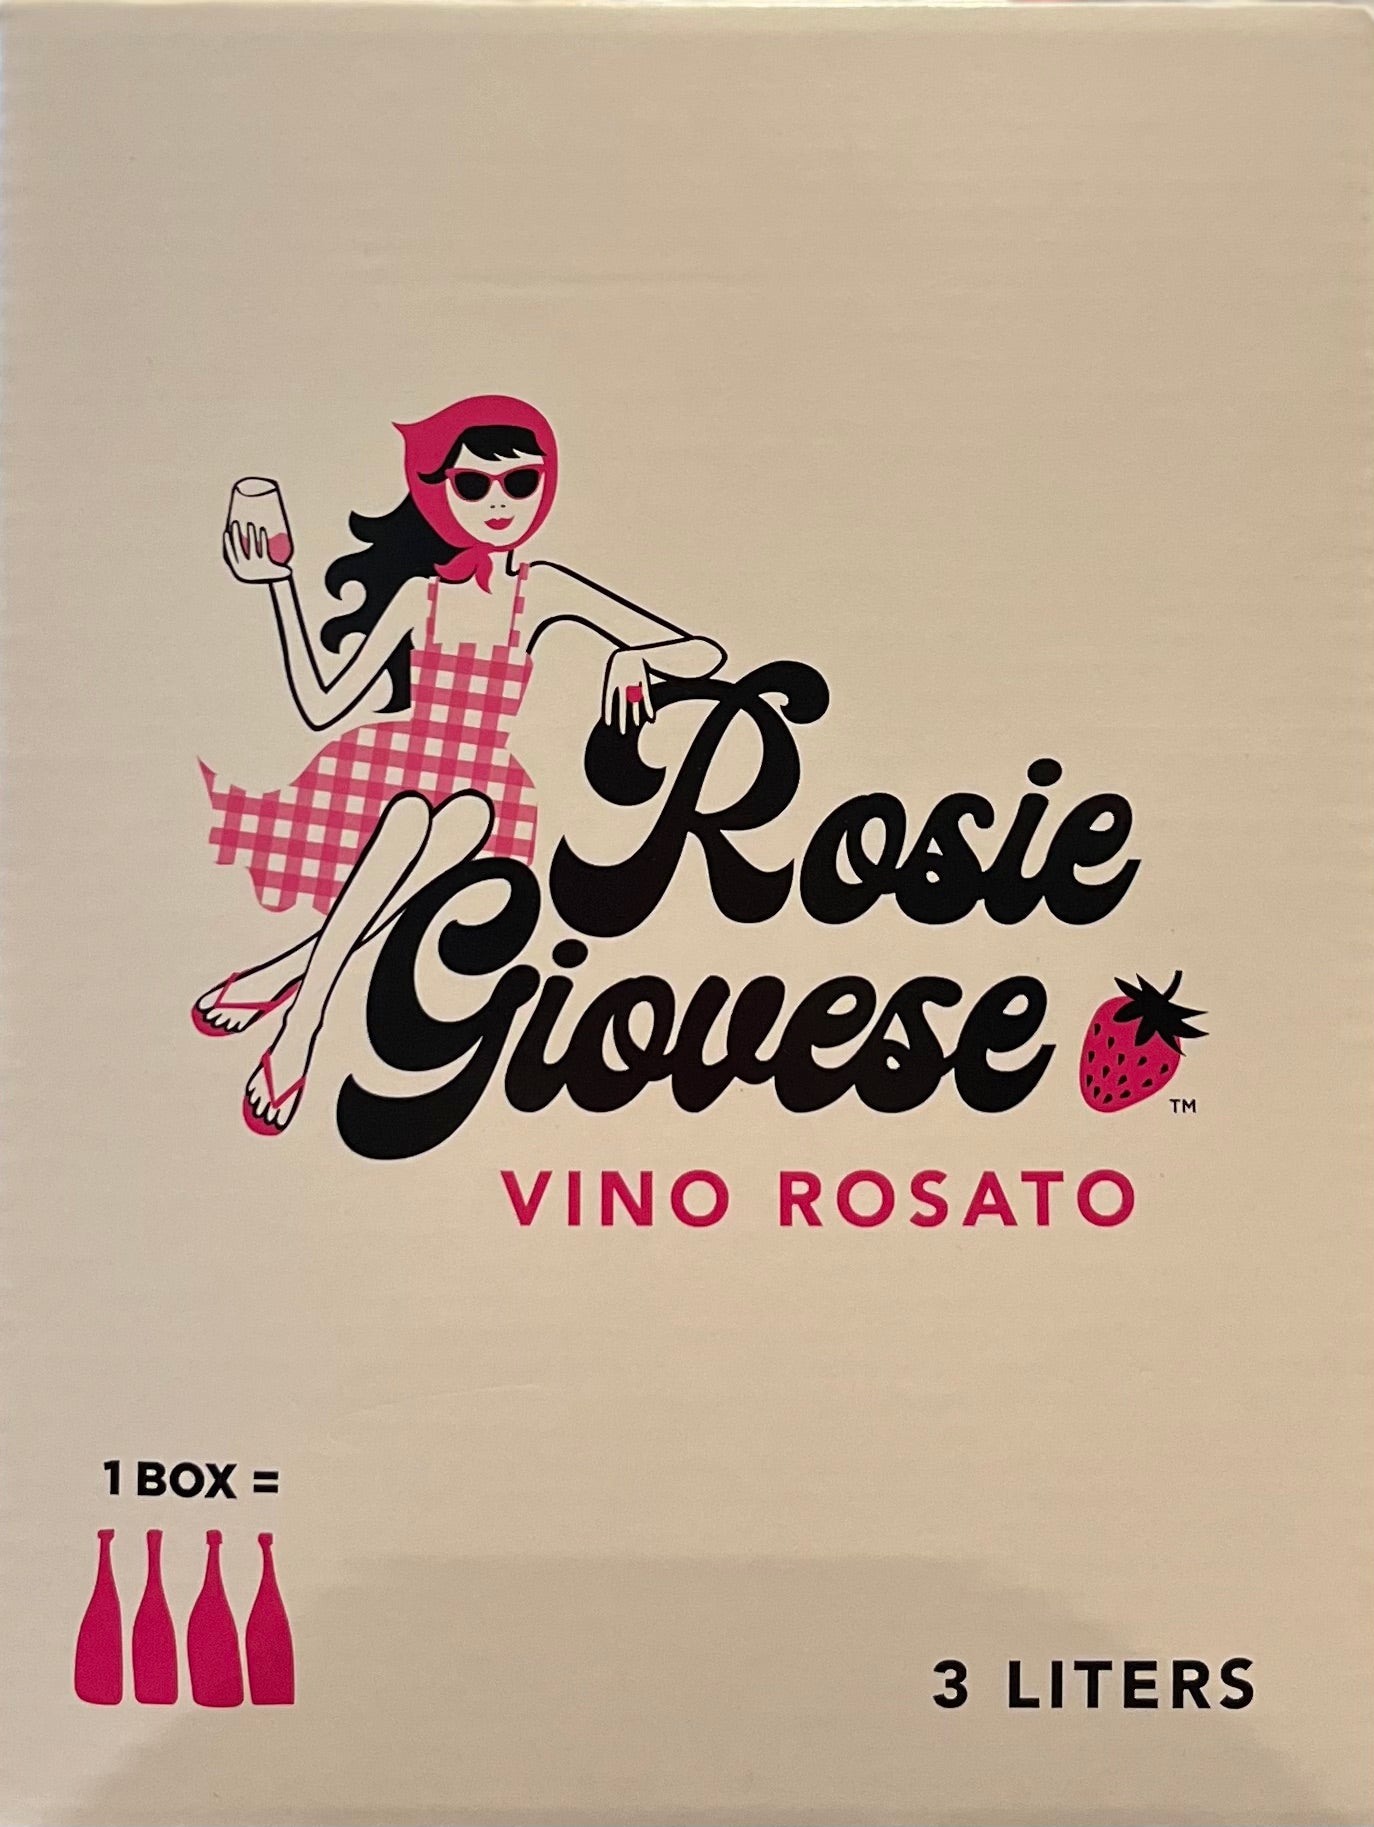 Rosie Giovese Rose